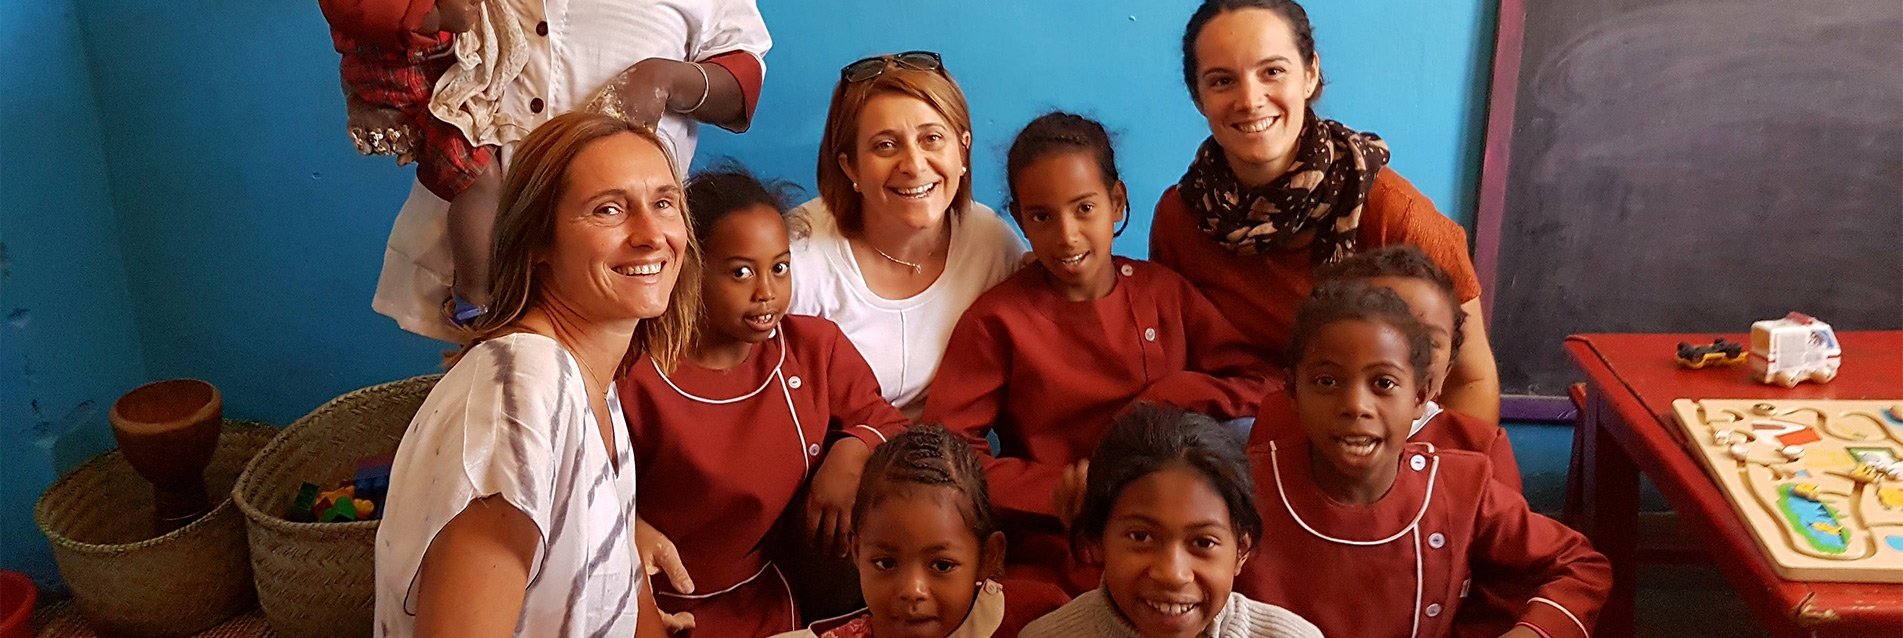 La Fondation People&baby pour l’enfance soutient l’association « Les enfants du soleil » à Madagascar